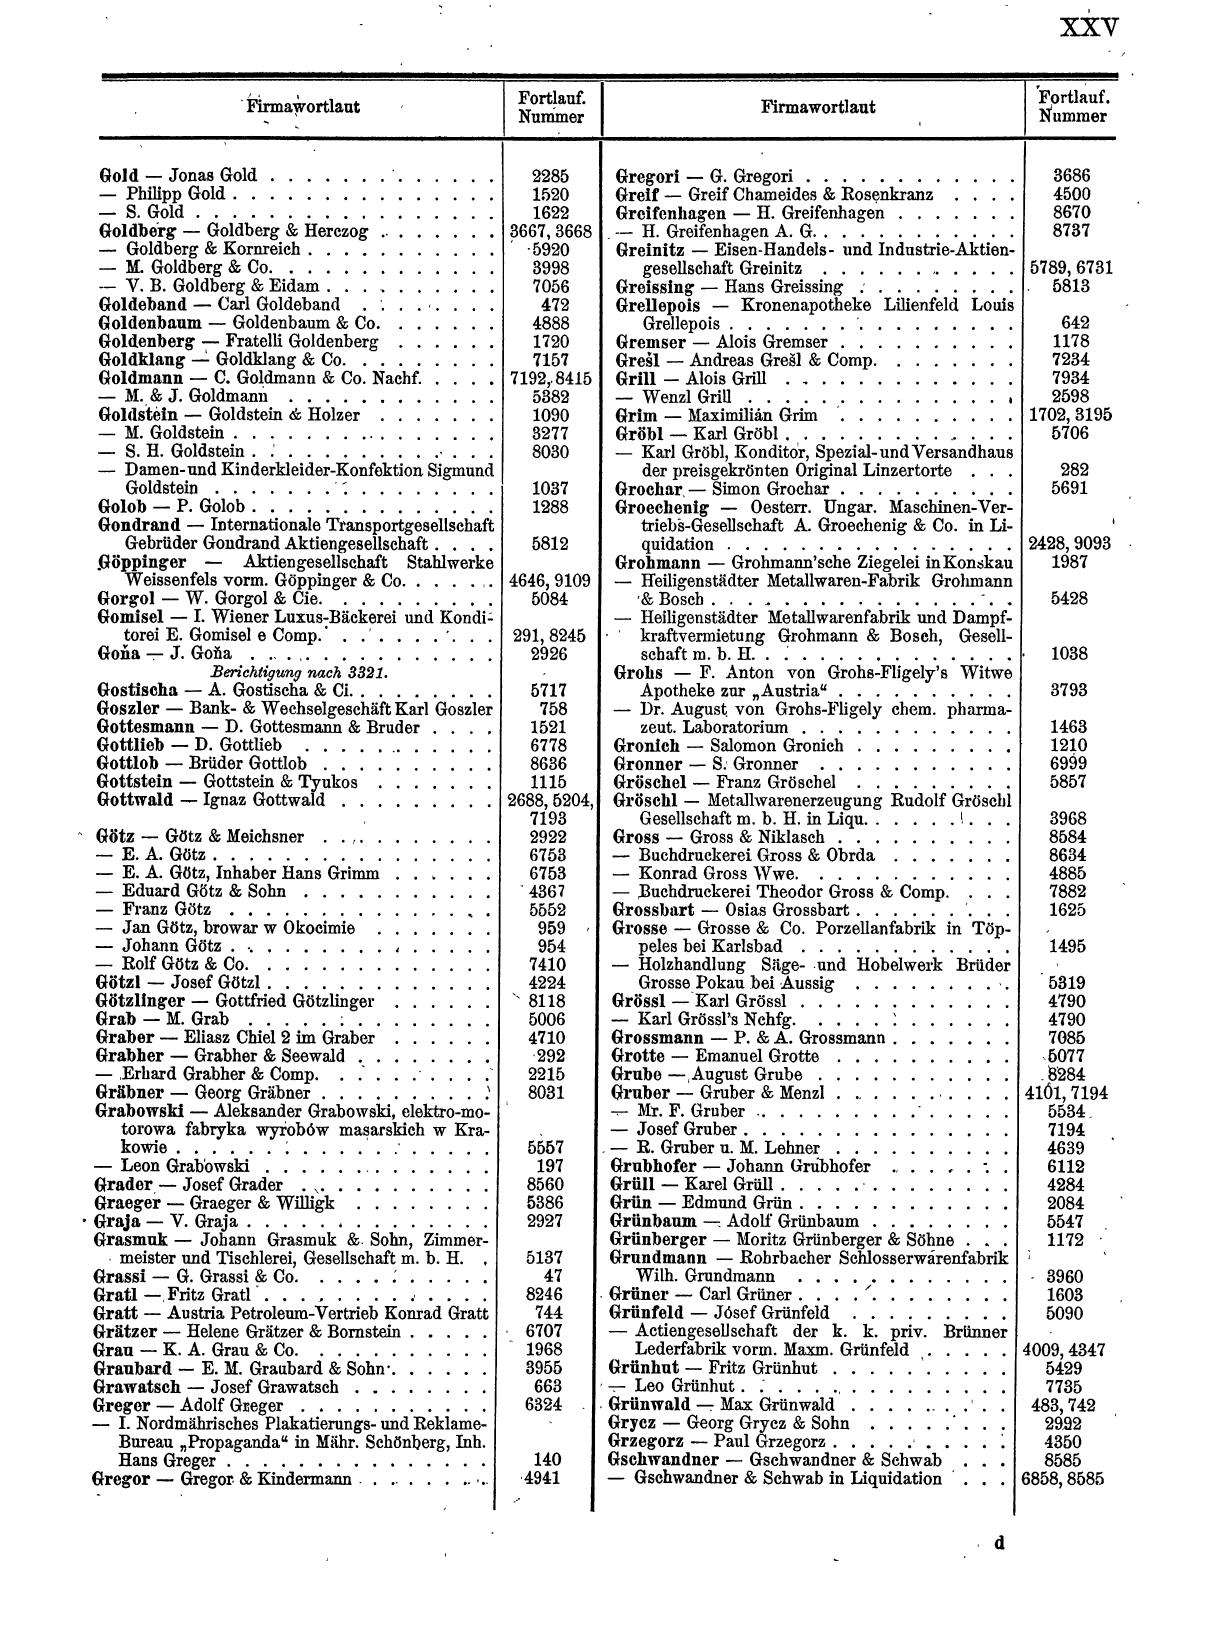 Zentralblatt für die Eintragungen in das Handelsregister 1913, Teil 1 - Seite 33